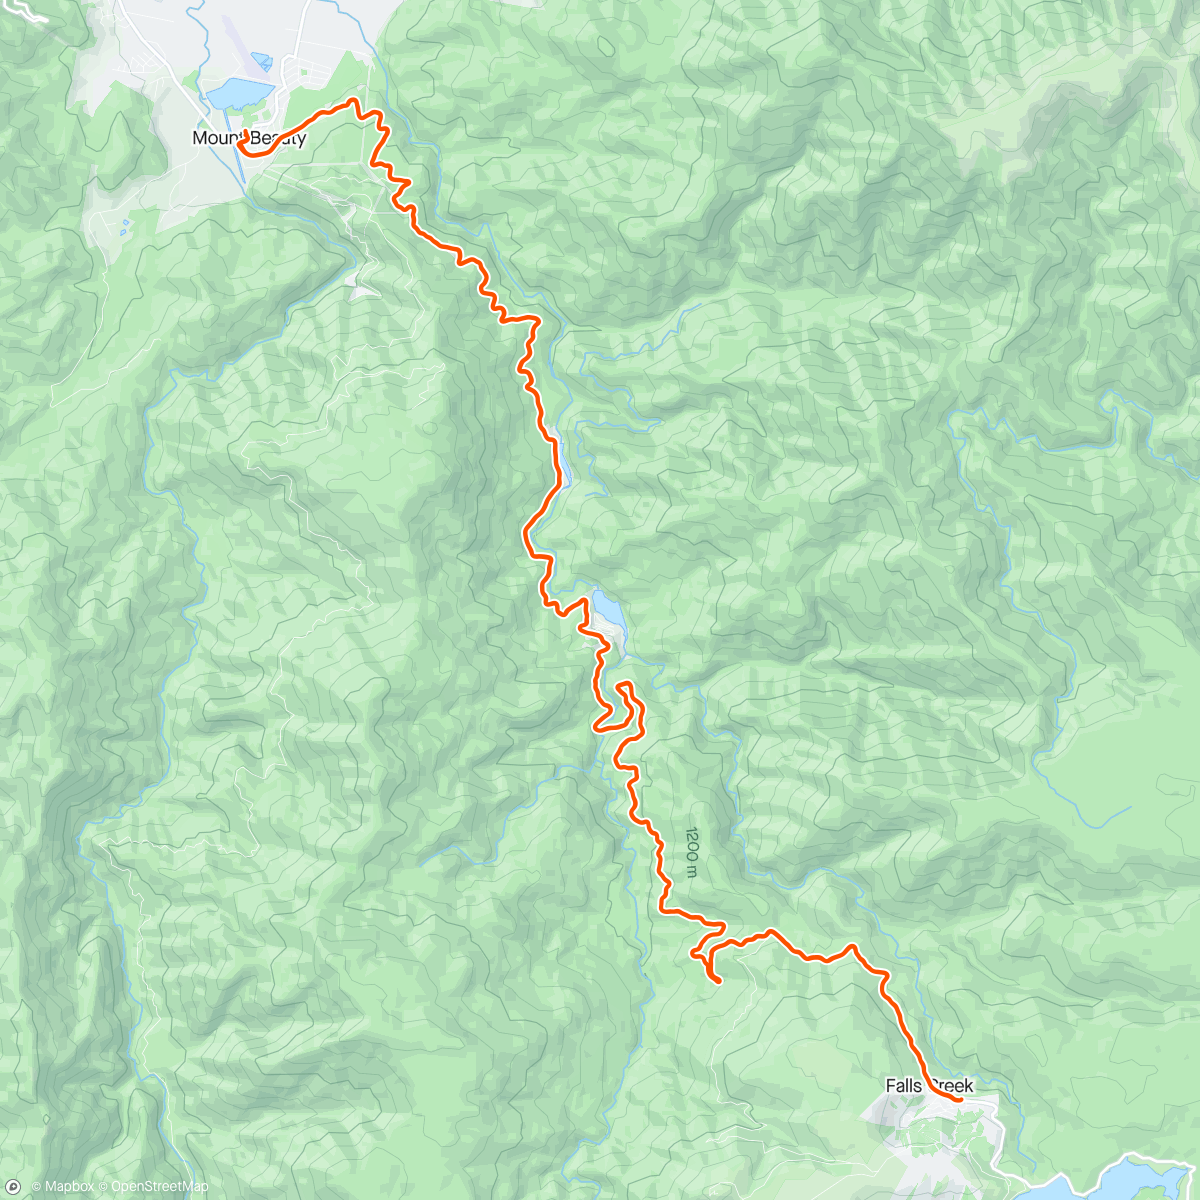 Mapa de la actividad (Falls Creek - final climb in this region)